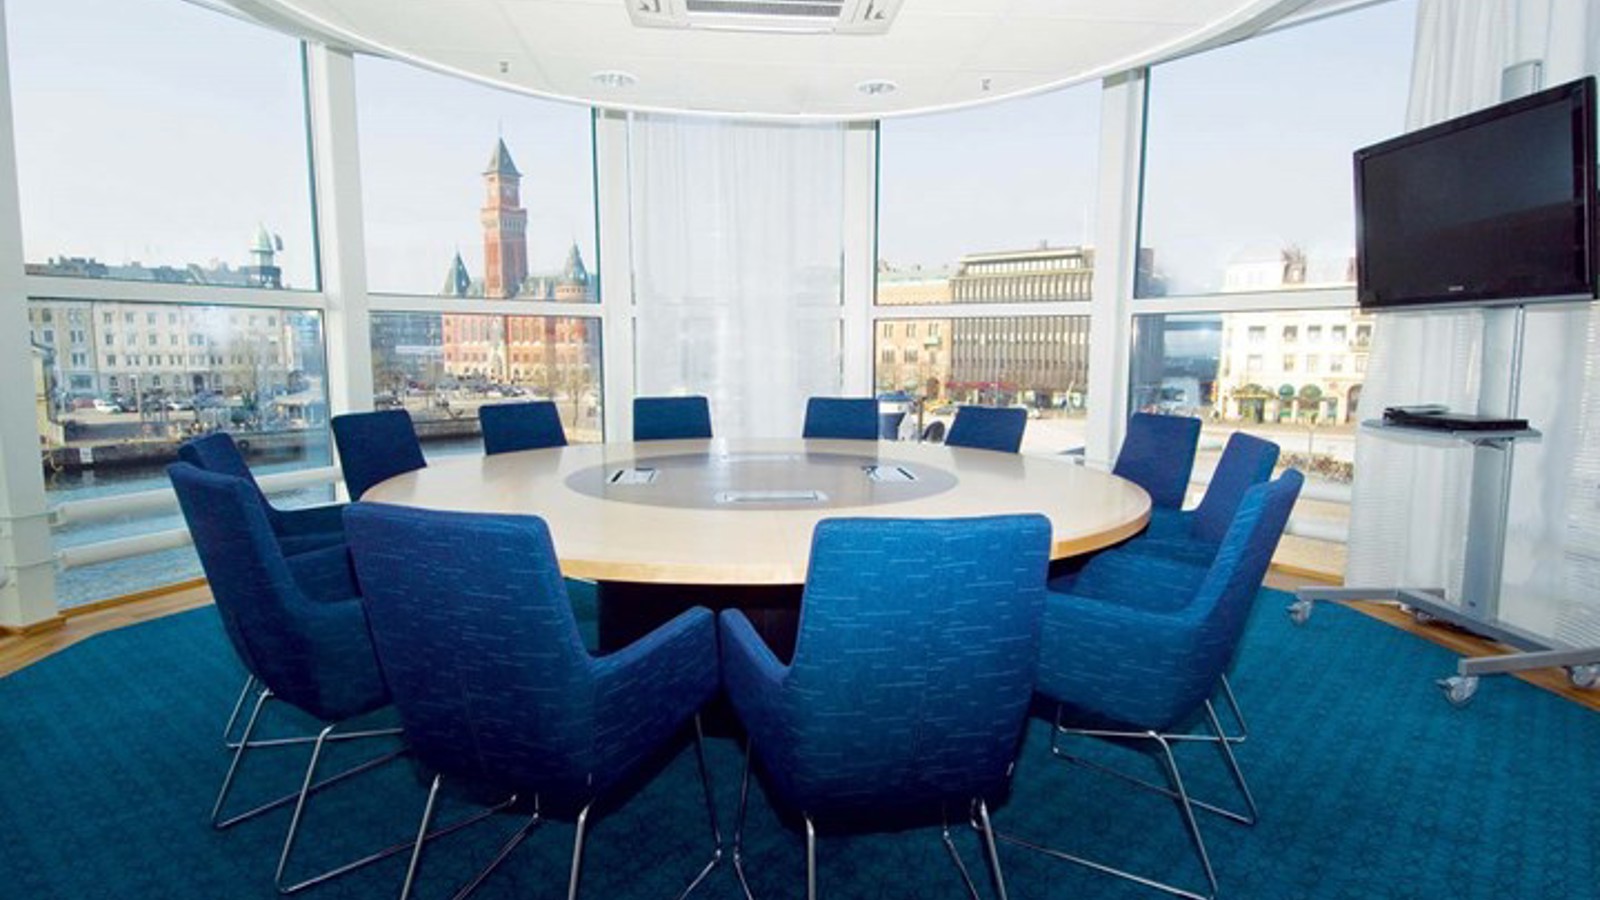 Konferensrum med runt bord, blå fåtöljer, blå matta och stora fönster med utsikt